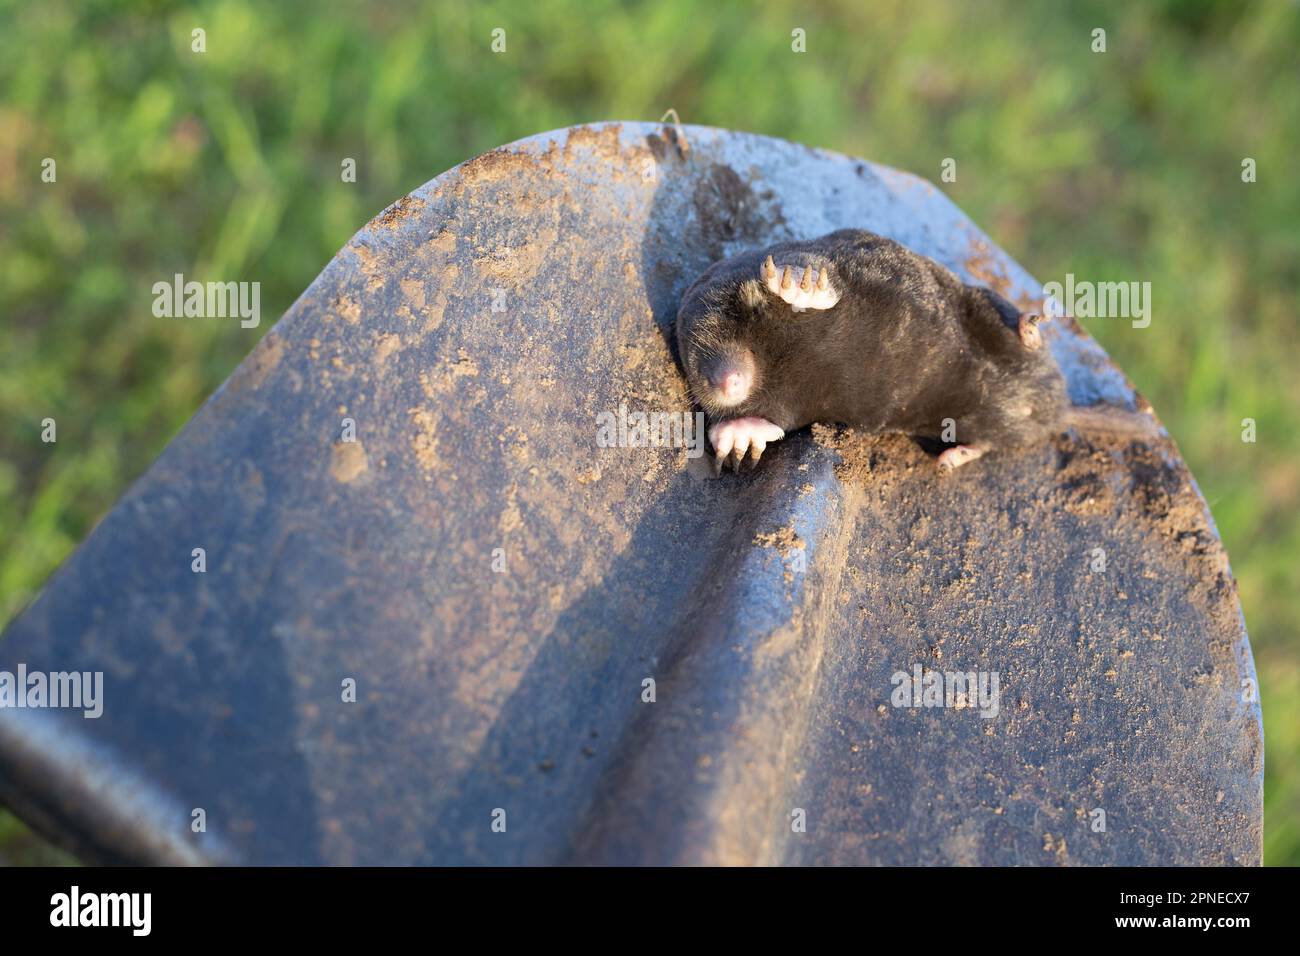 la mole morte repose sur la baïonnette d'une pelle. Extermination de rongeurs-ravageurs à leur chalet d'été. Banque D'Images